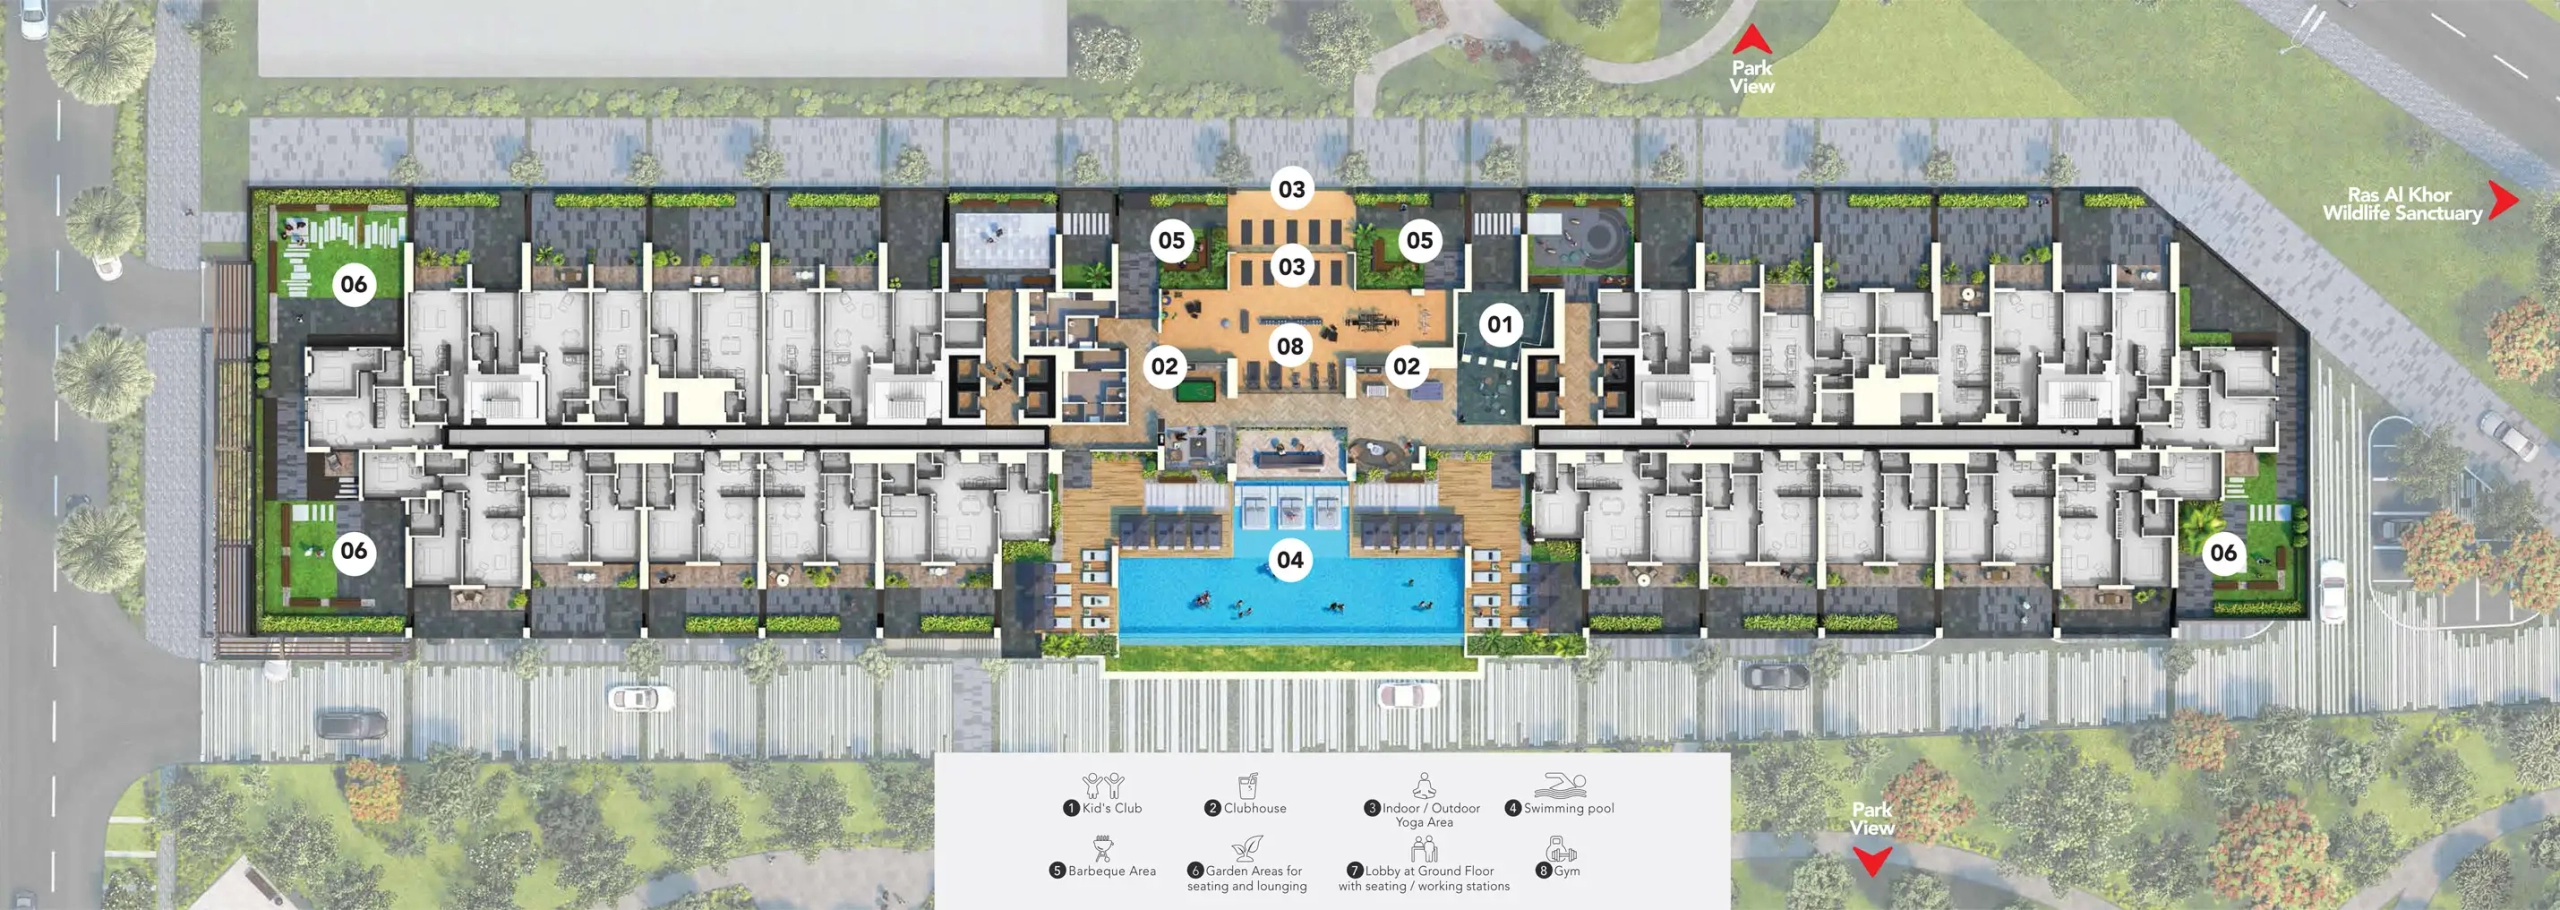 Wilton Park Residences Phase 2 Master Plan